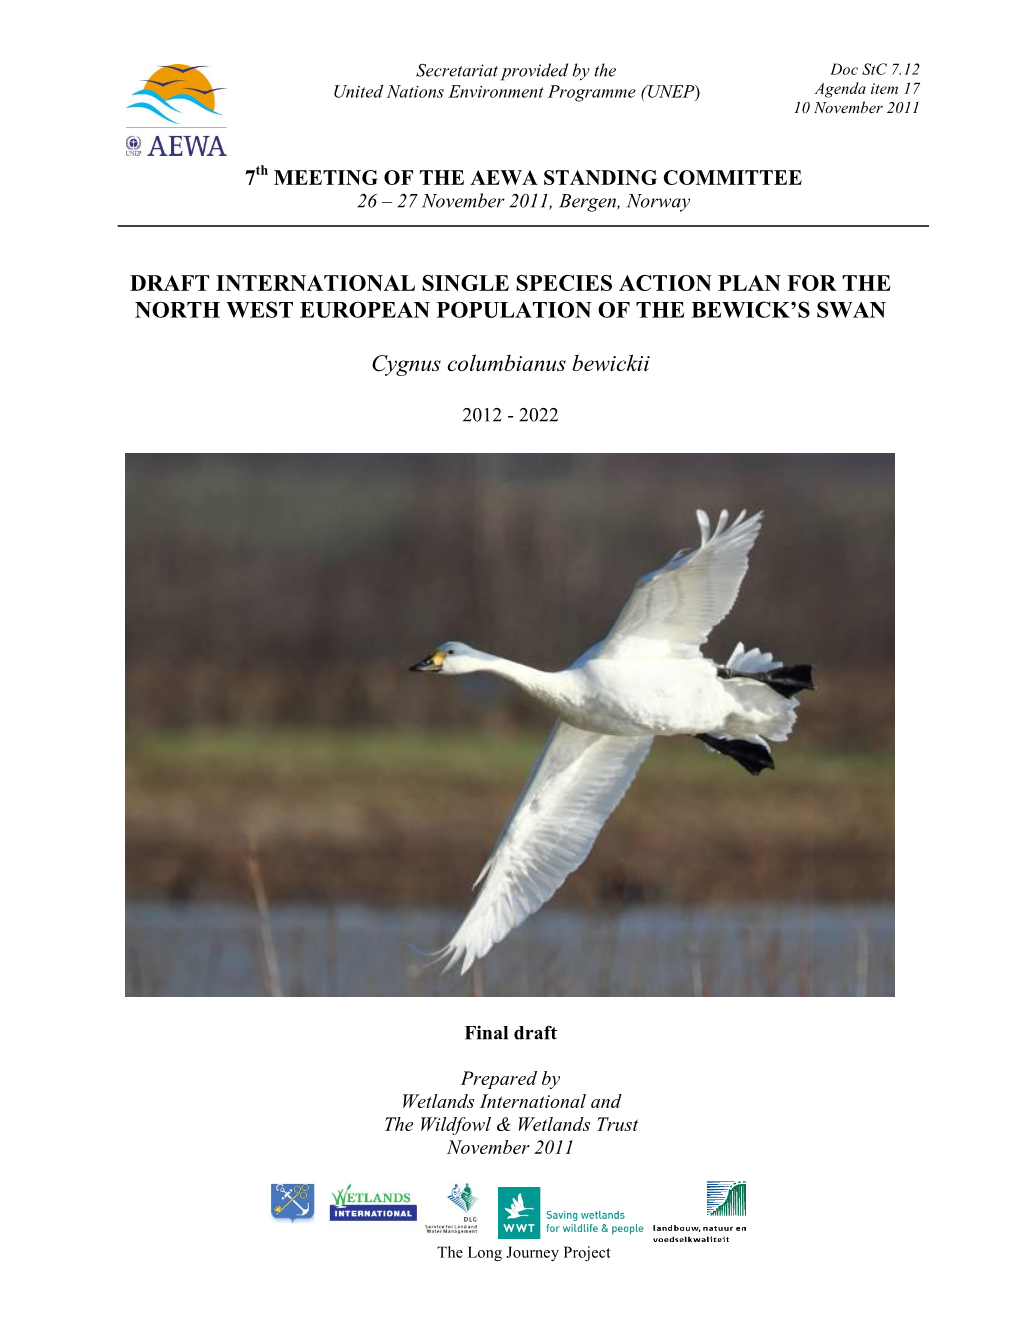 Bewick's Swan Single Species Action Plan